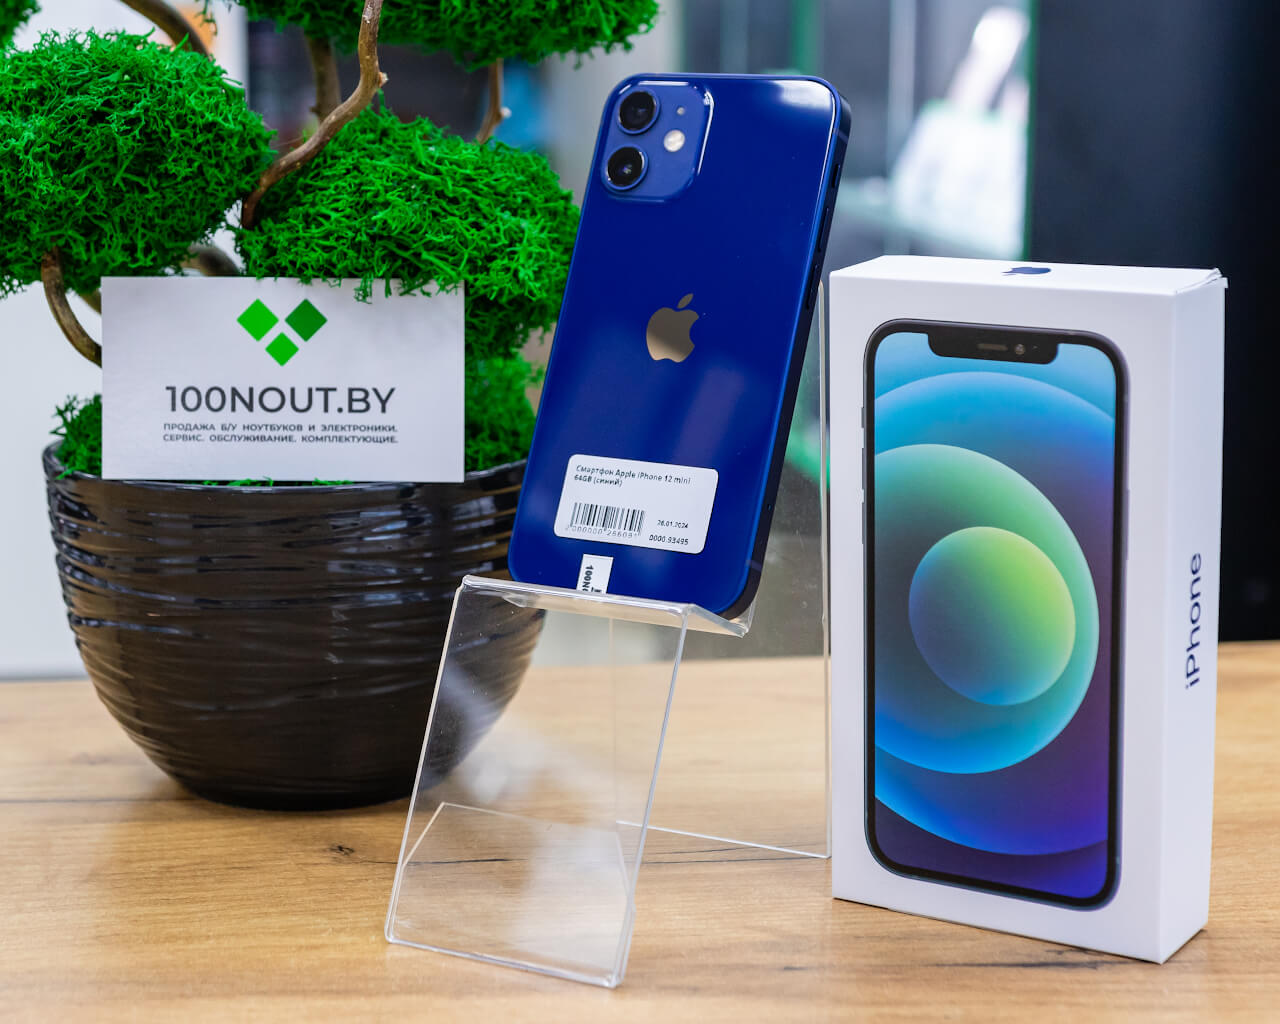 Смартфон Apple iPhone 12 mini 64GB (синий) б/у купить недорого в Минске -  100NOUT